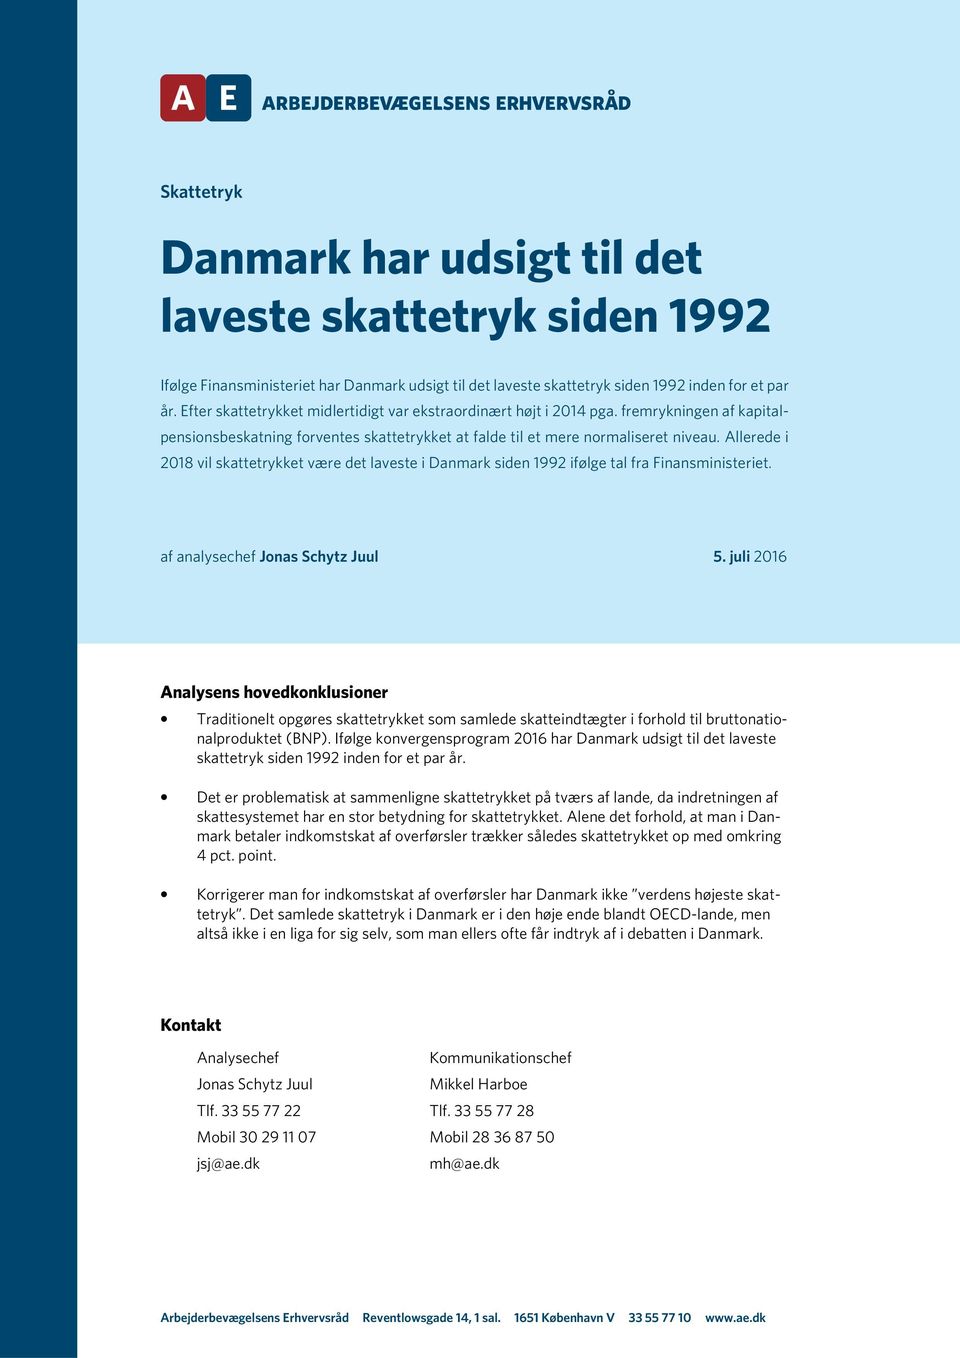 Allerede i 2018 vil skattetrykket være det laveste i Danmark siden 1992 ifølge tal fra Finansministeriet. af analysechef Jonas Schytz Juul 5.